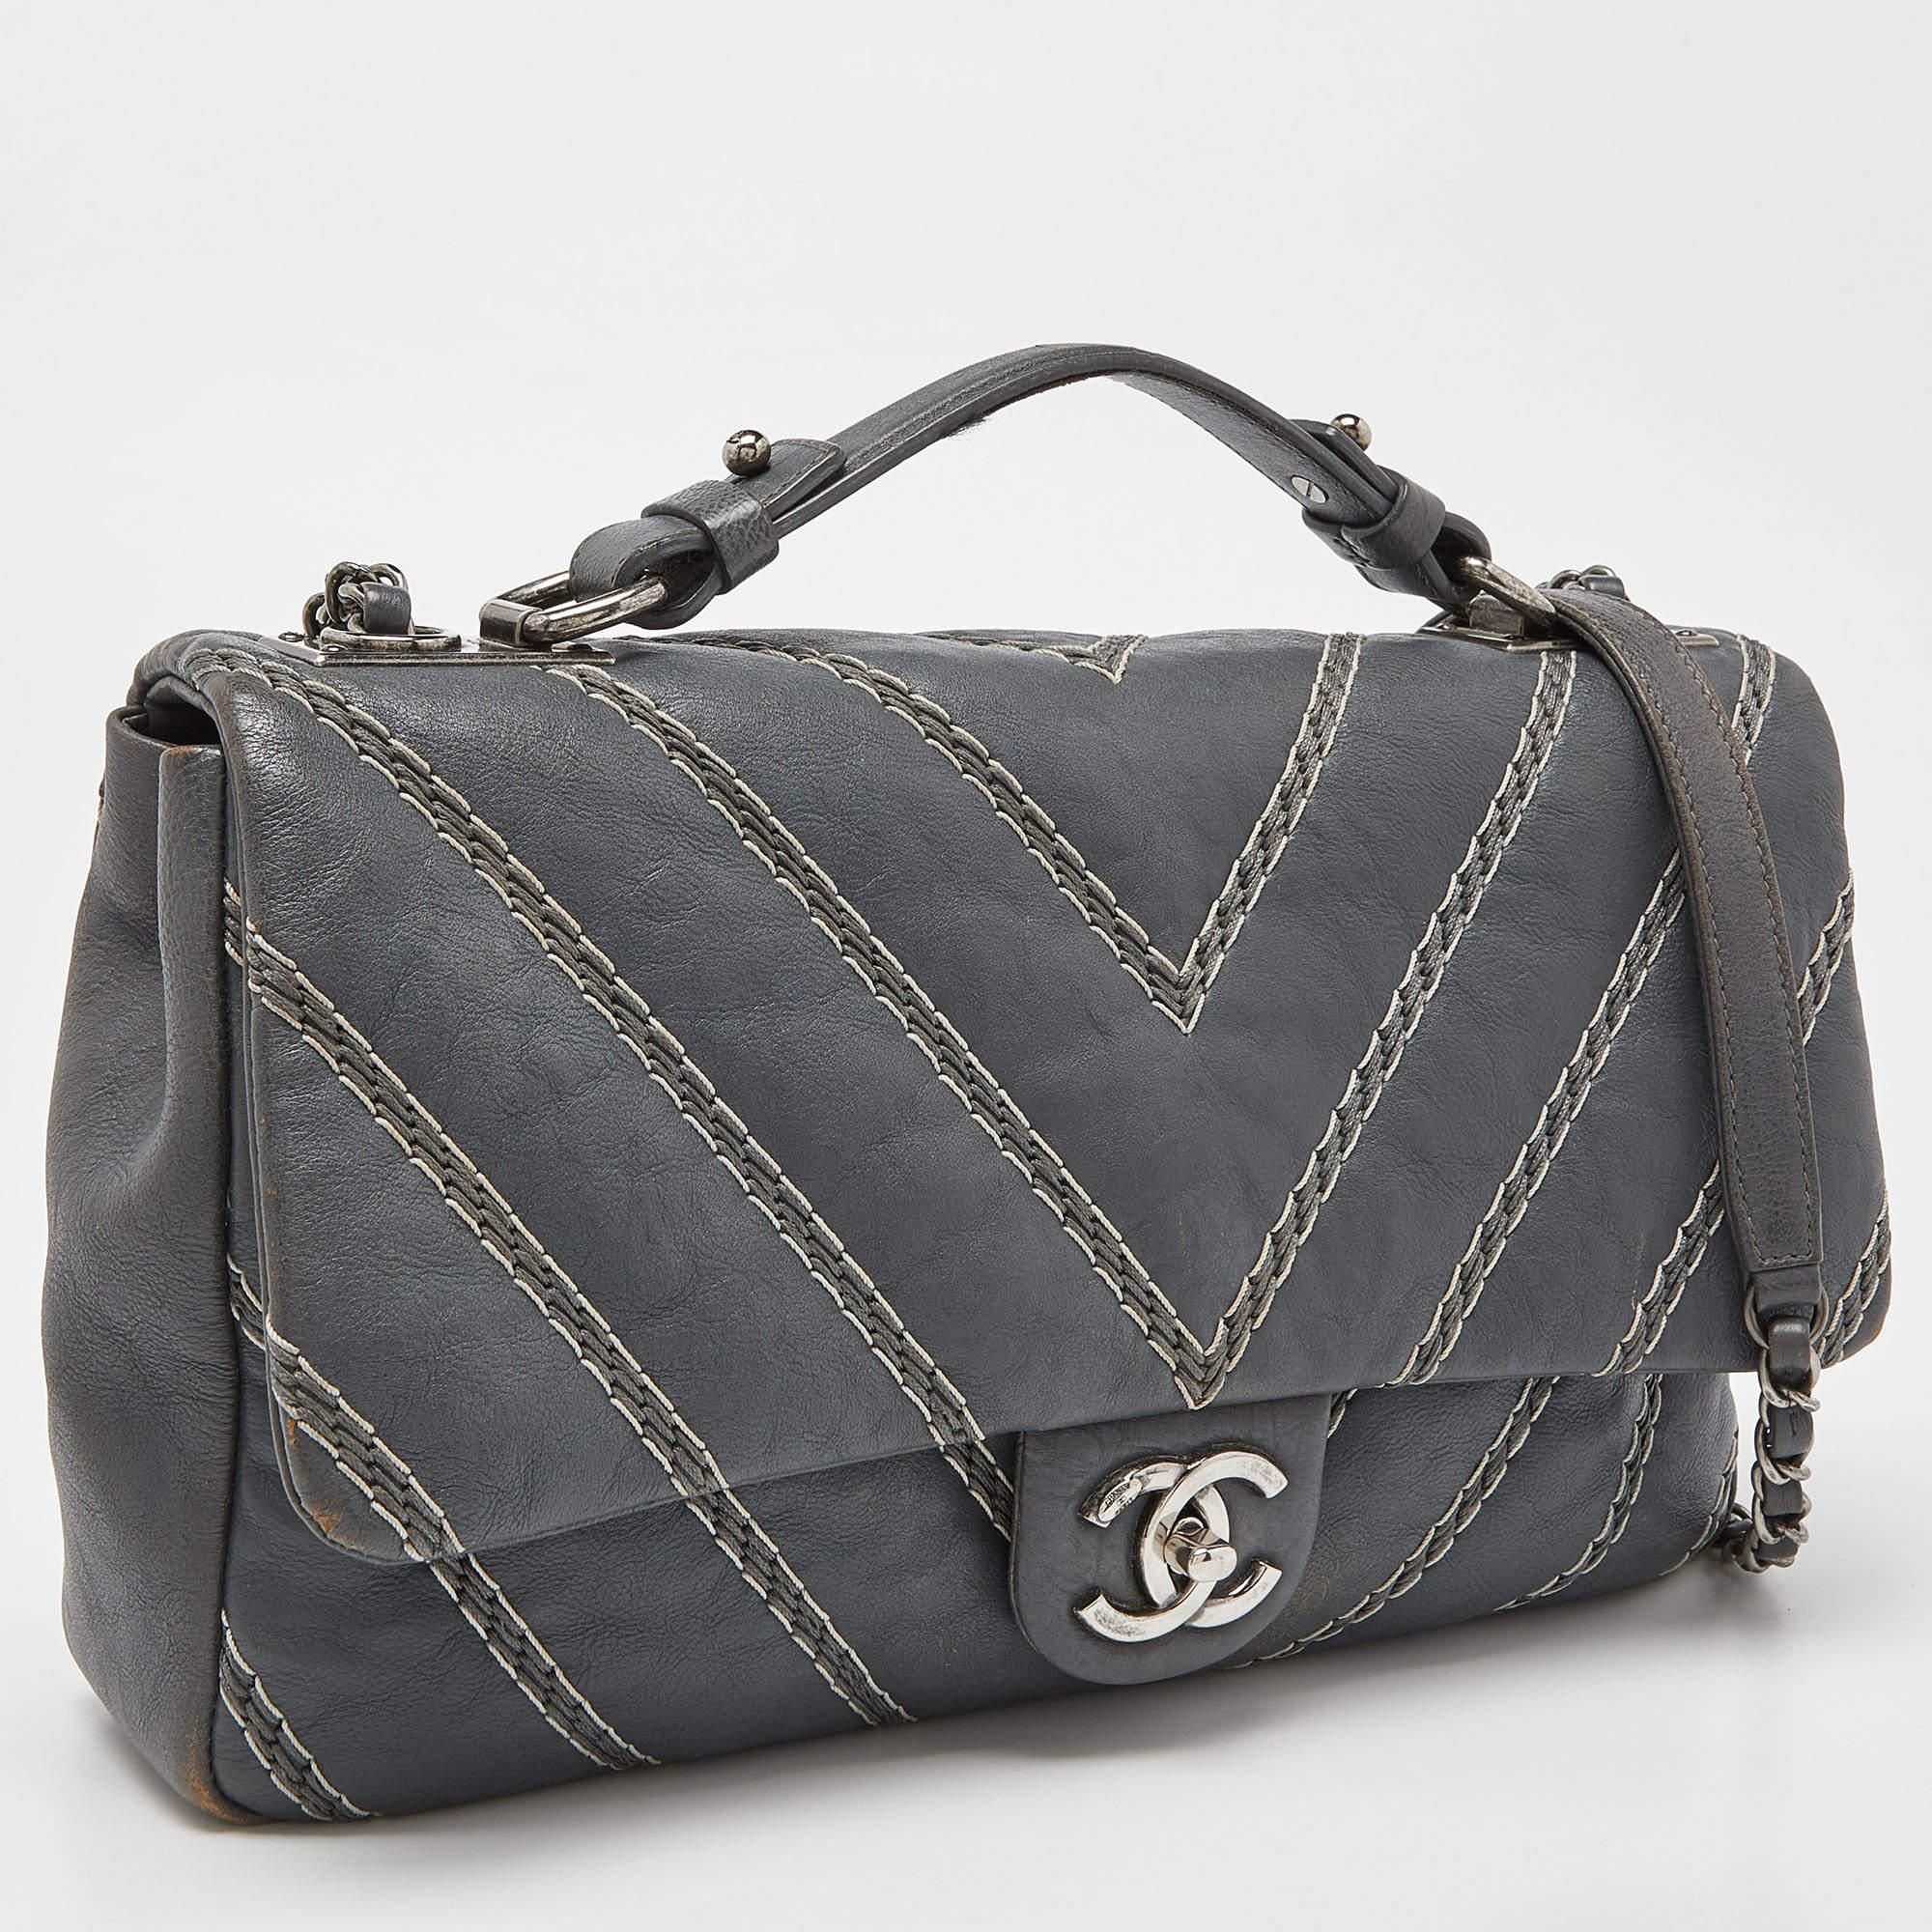 Eine klassische Handtasche verspricht dauerhafte Attraktivität und unterstreicht Ihren Stil immer wieder aufs Neue. Diese Chanel Tasche mit oberem Griff ist eine solche Kreation. Das ist ein guter Kauf.

